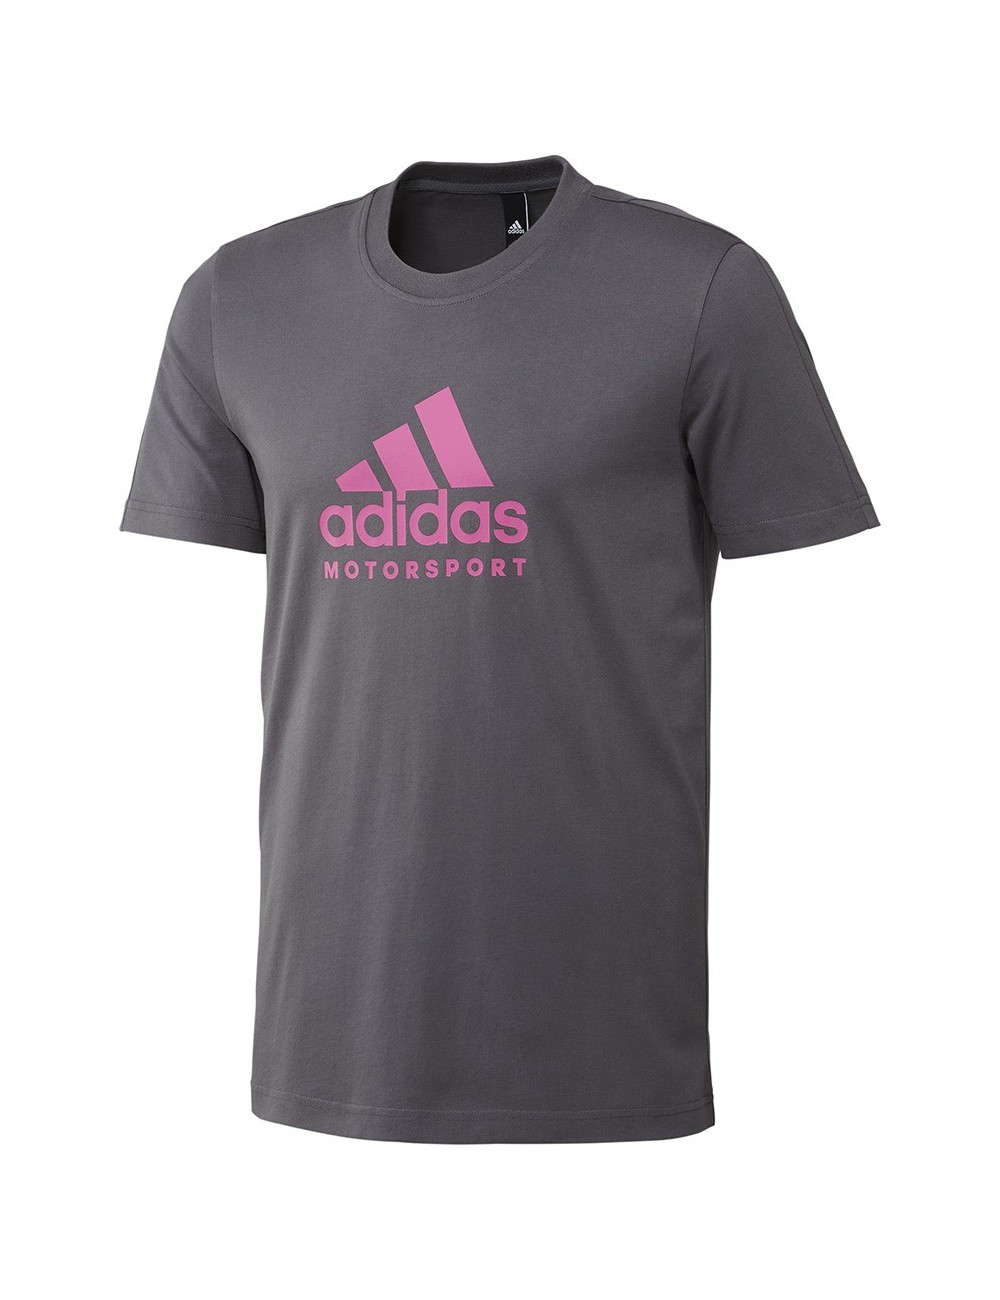 Adidas Tee-shirt Motorsport rose